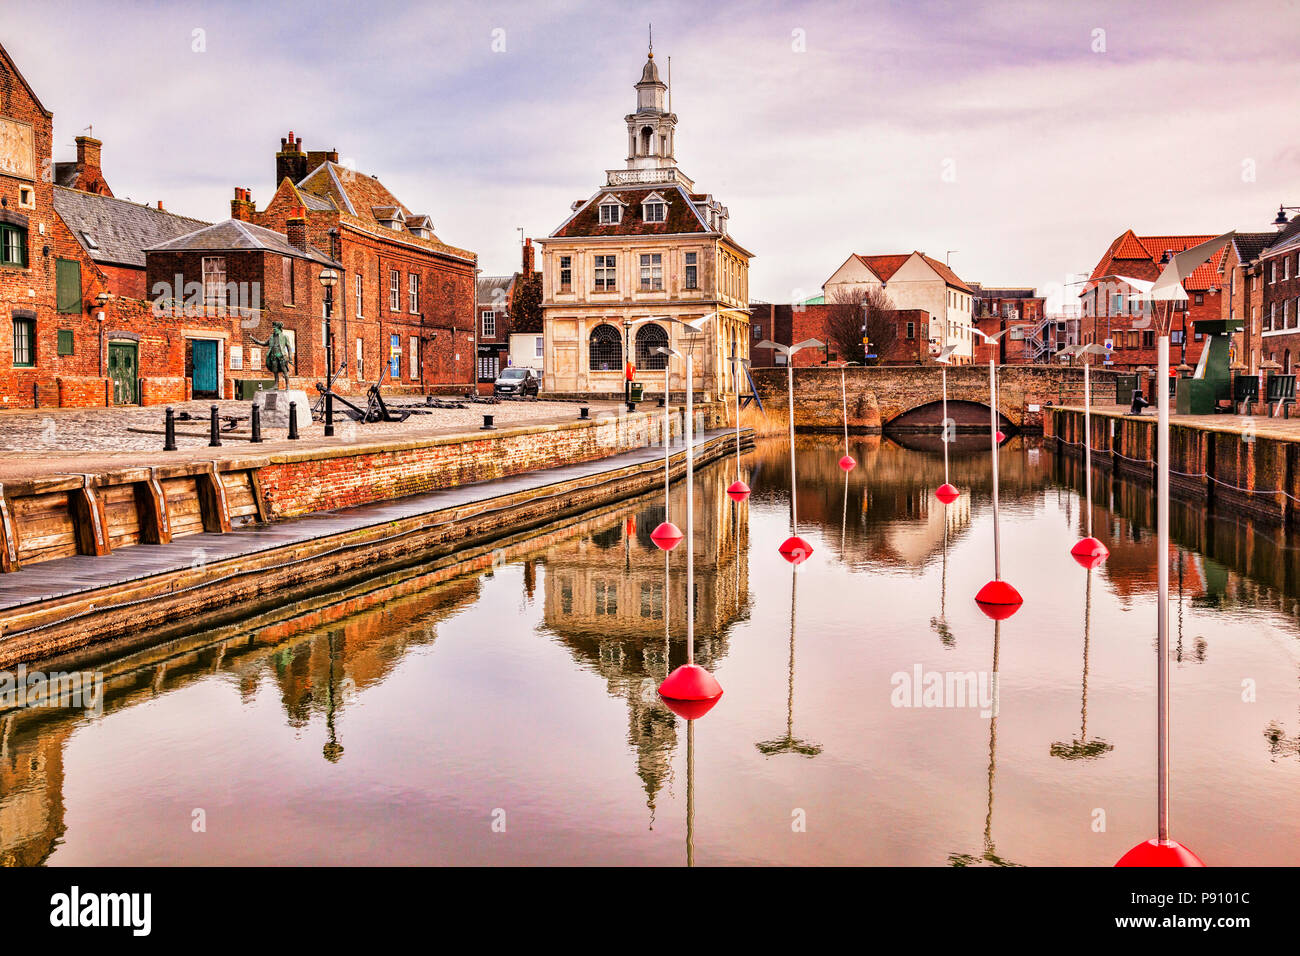 20 de febrero de 2015: Purfleet Quay, en King's Lynn, Norfolk, Inglaterra - ilustraciones están en conjunción con la ciudad de Amiens, como parte de... Foto de stock